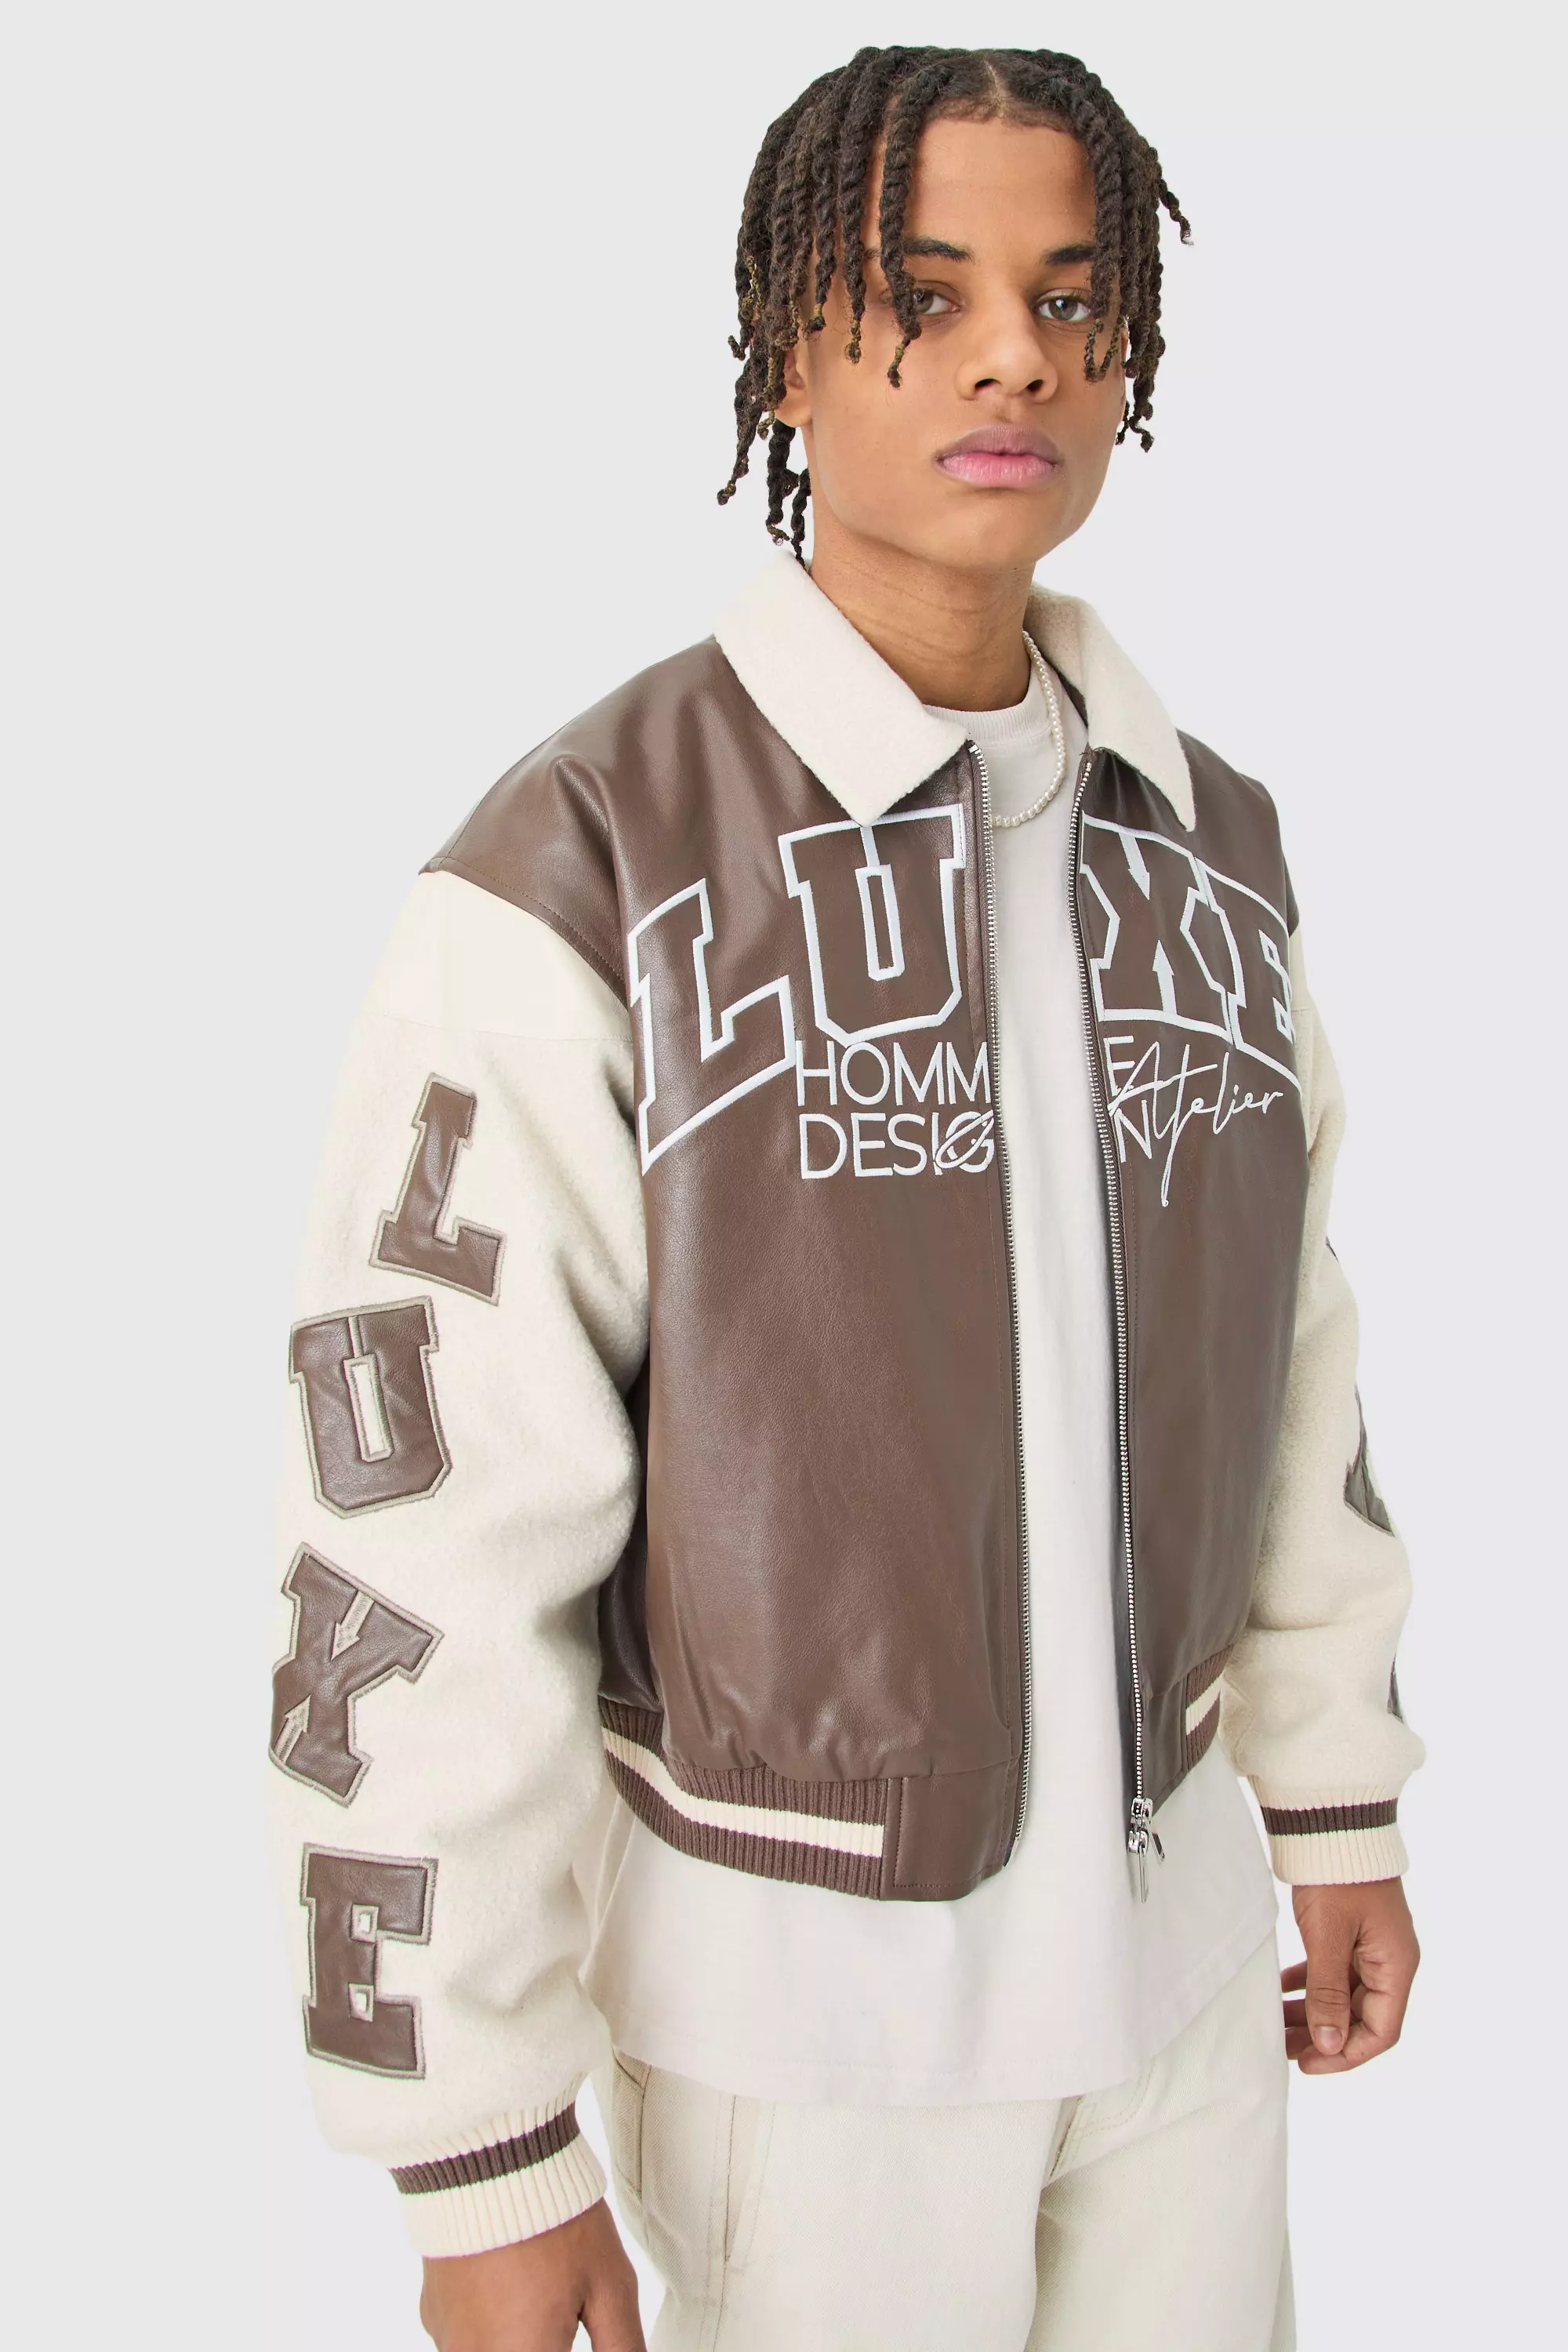 Louis Vuitton Souvenir Jackets  Leather varsity jackets, Varsity